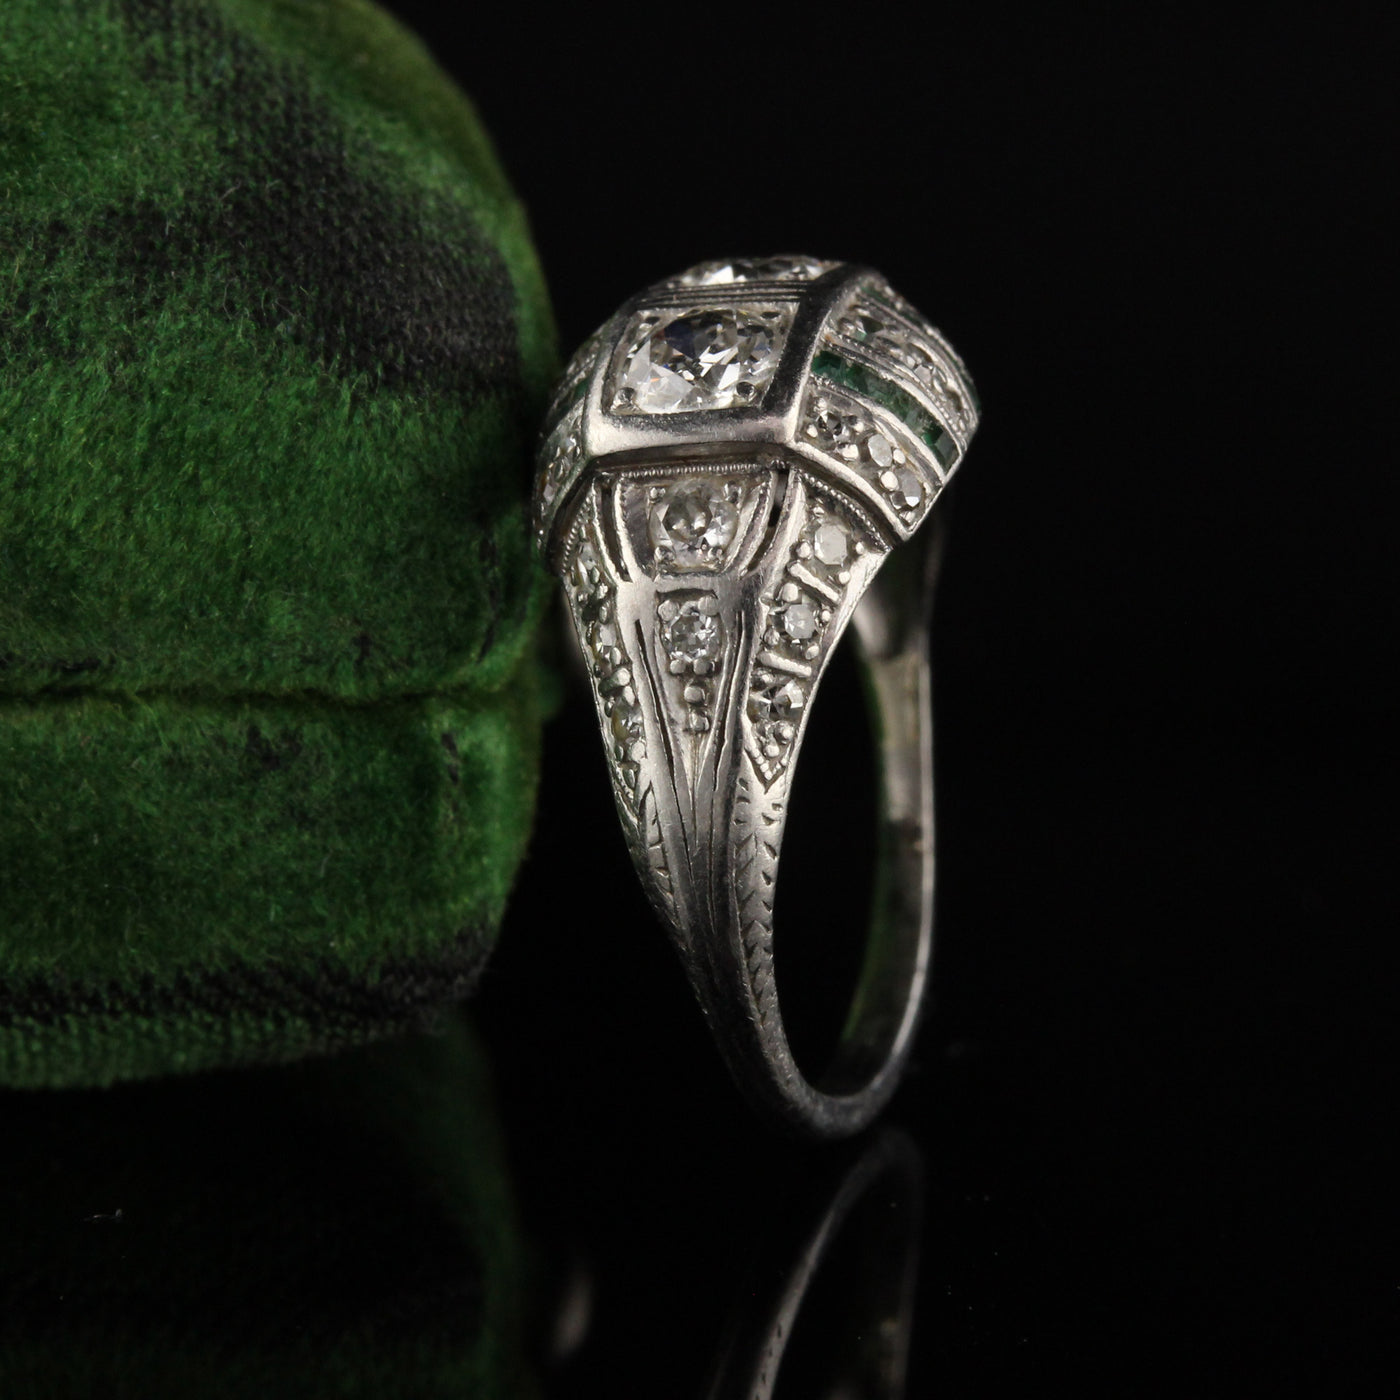 Antique Art Deco Platinum Old Euro Cut Diamond and Emerald Engagement Ring